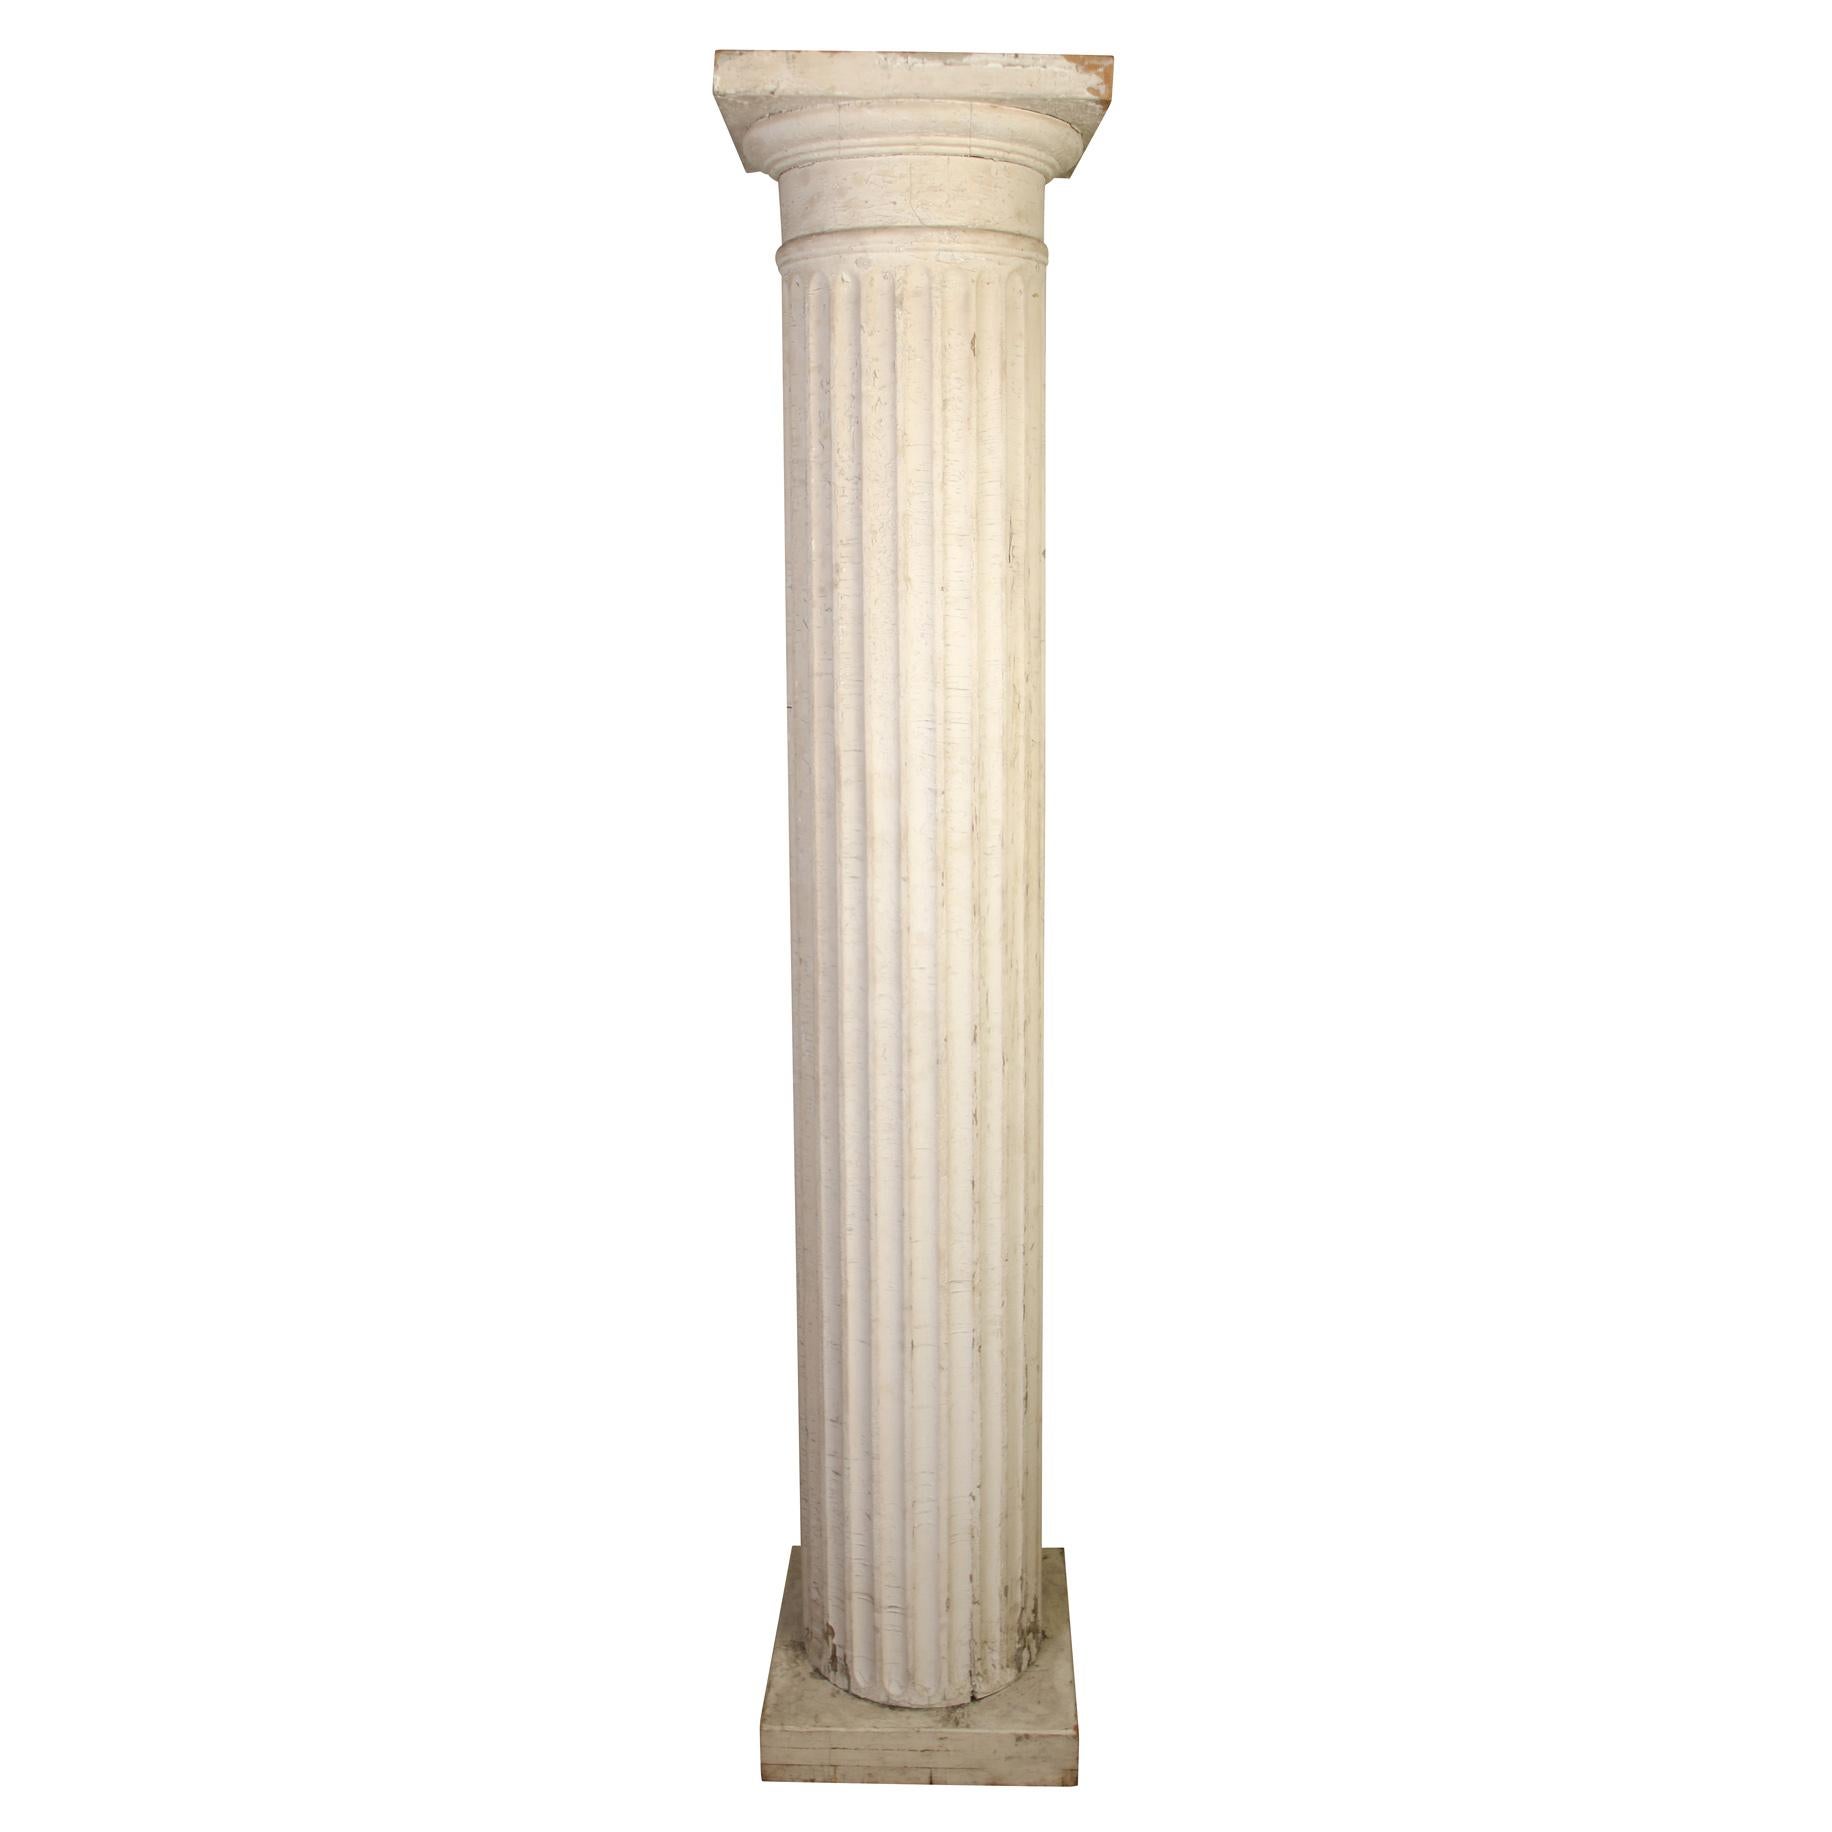 Ein beeindruckendes Paar antiker bemalter und geschnitzter weißer kannelierter Säulen. Der Durchmesser der Säule beträgt 14